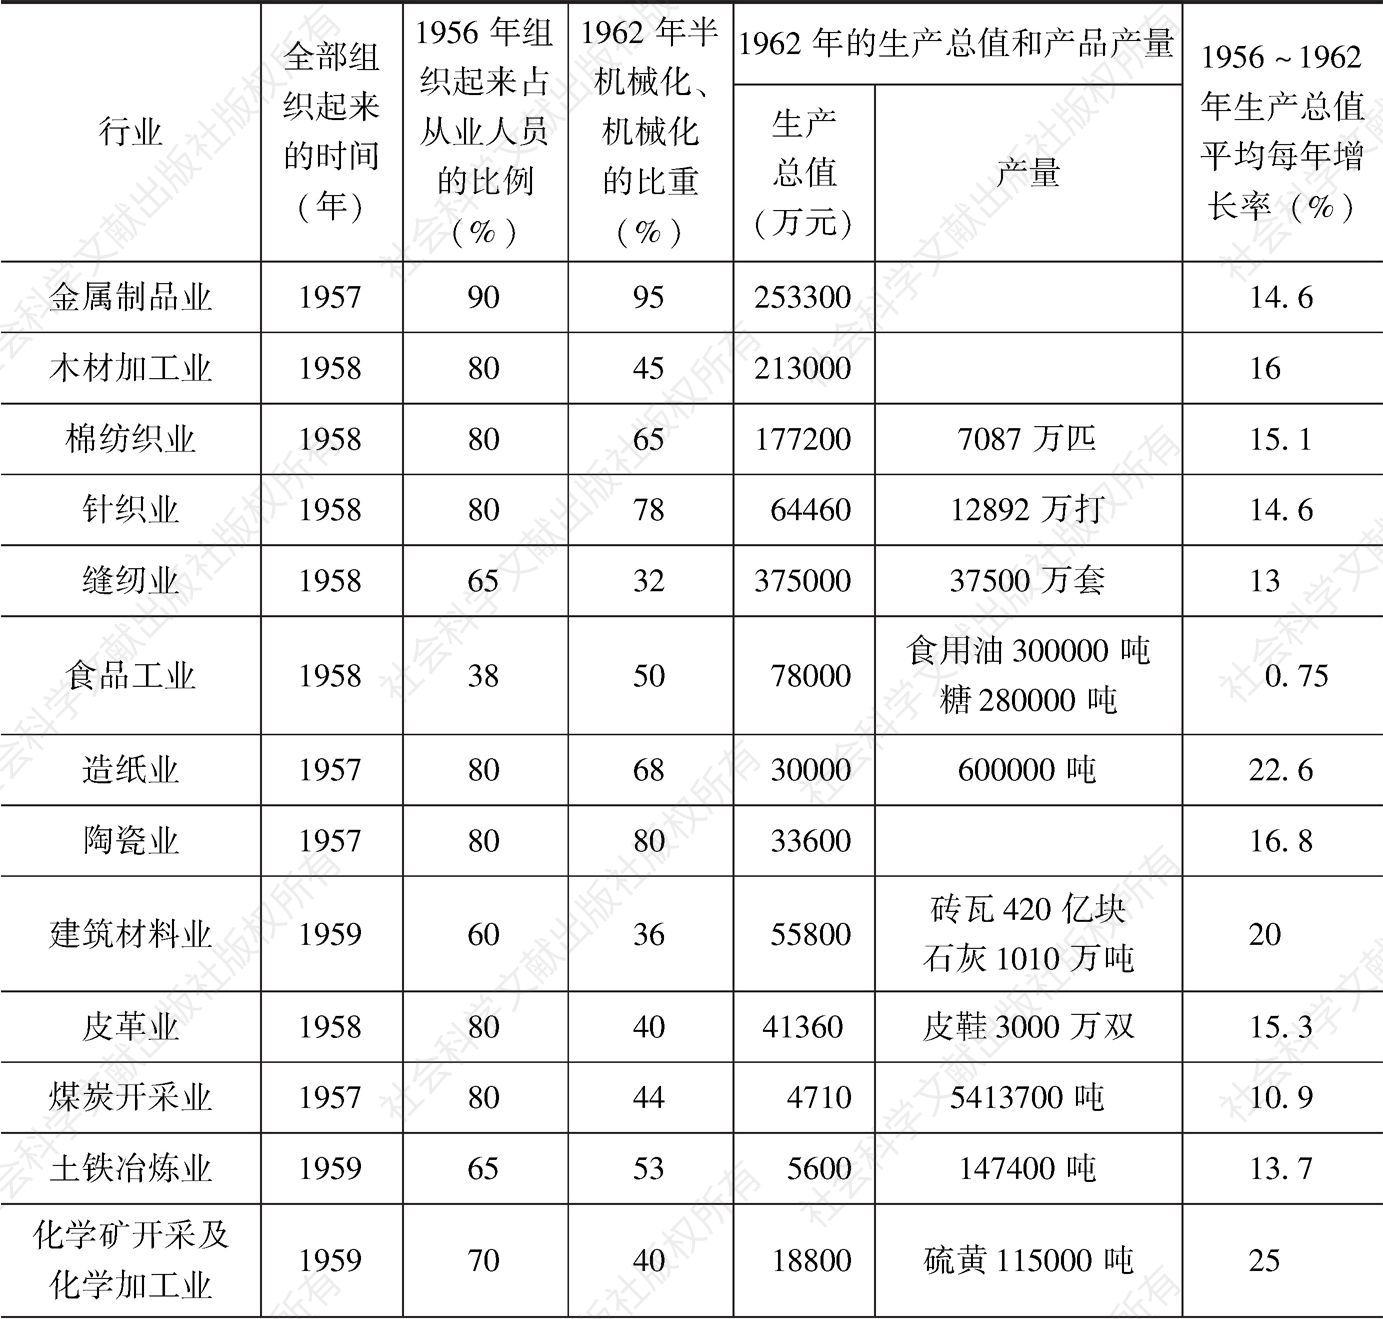 表5-4 1956年中国手工业各行业生产组织情况